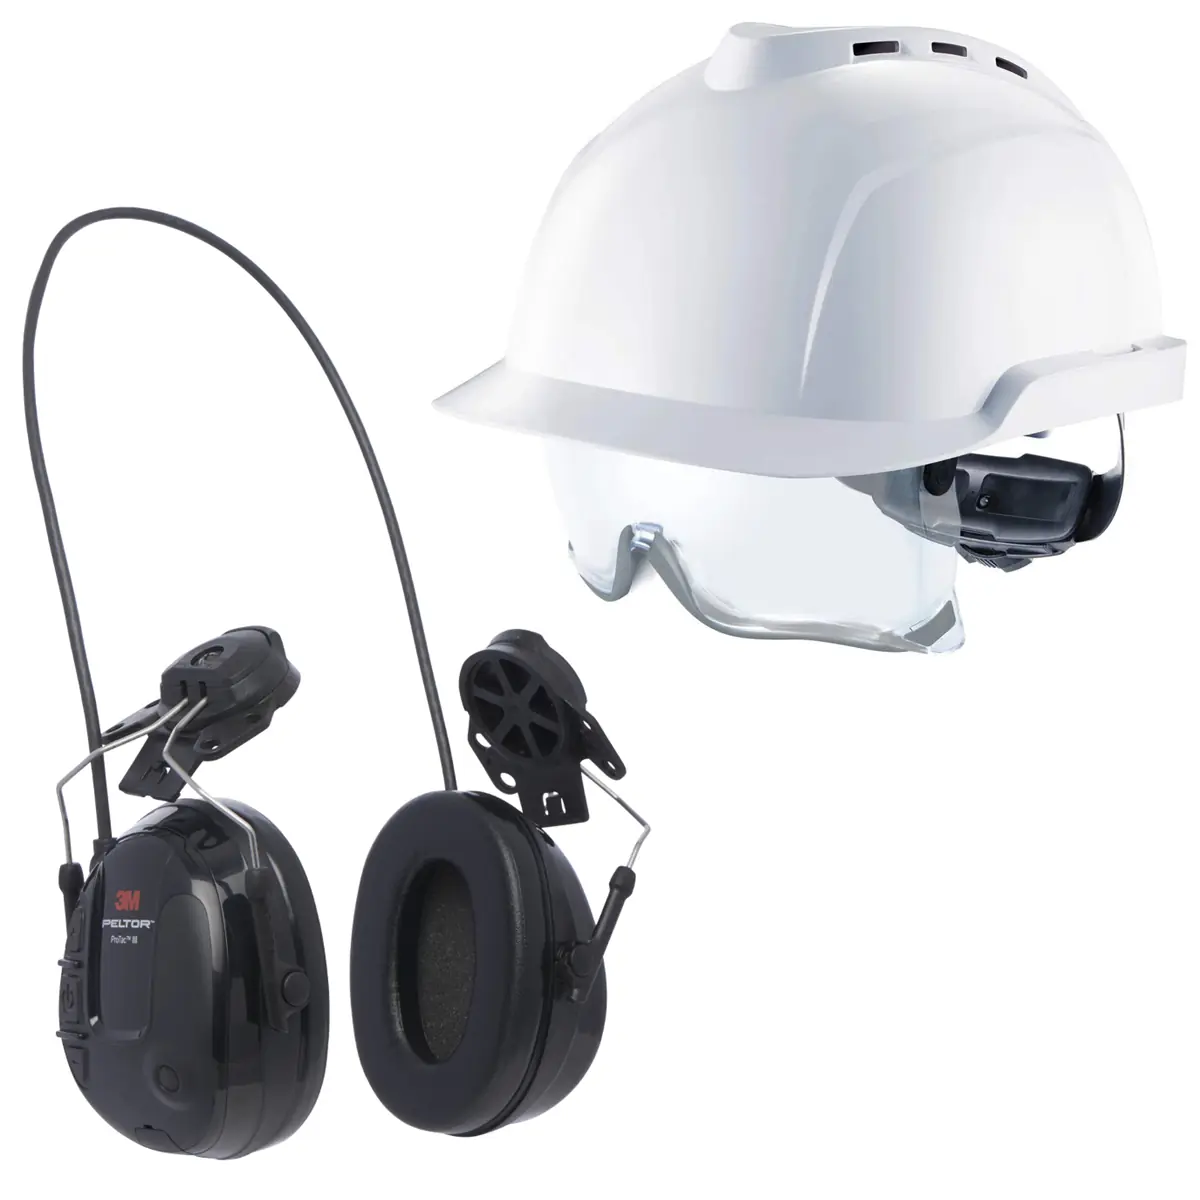 Pak veiligheidshelm en gehoorbescherming in met geluidsmodulatie